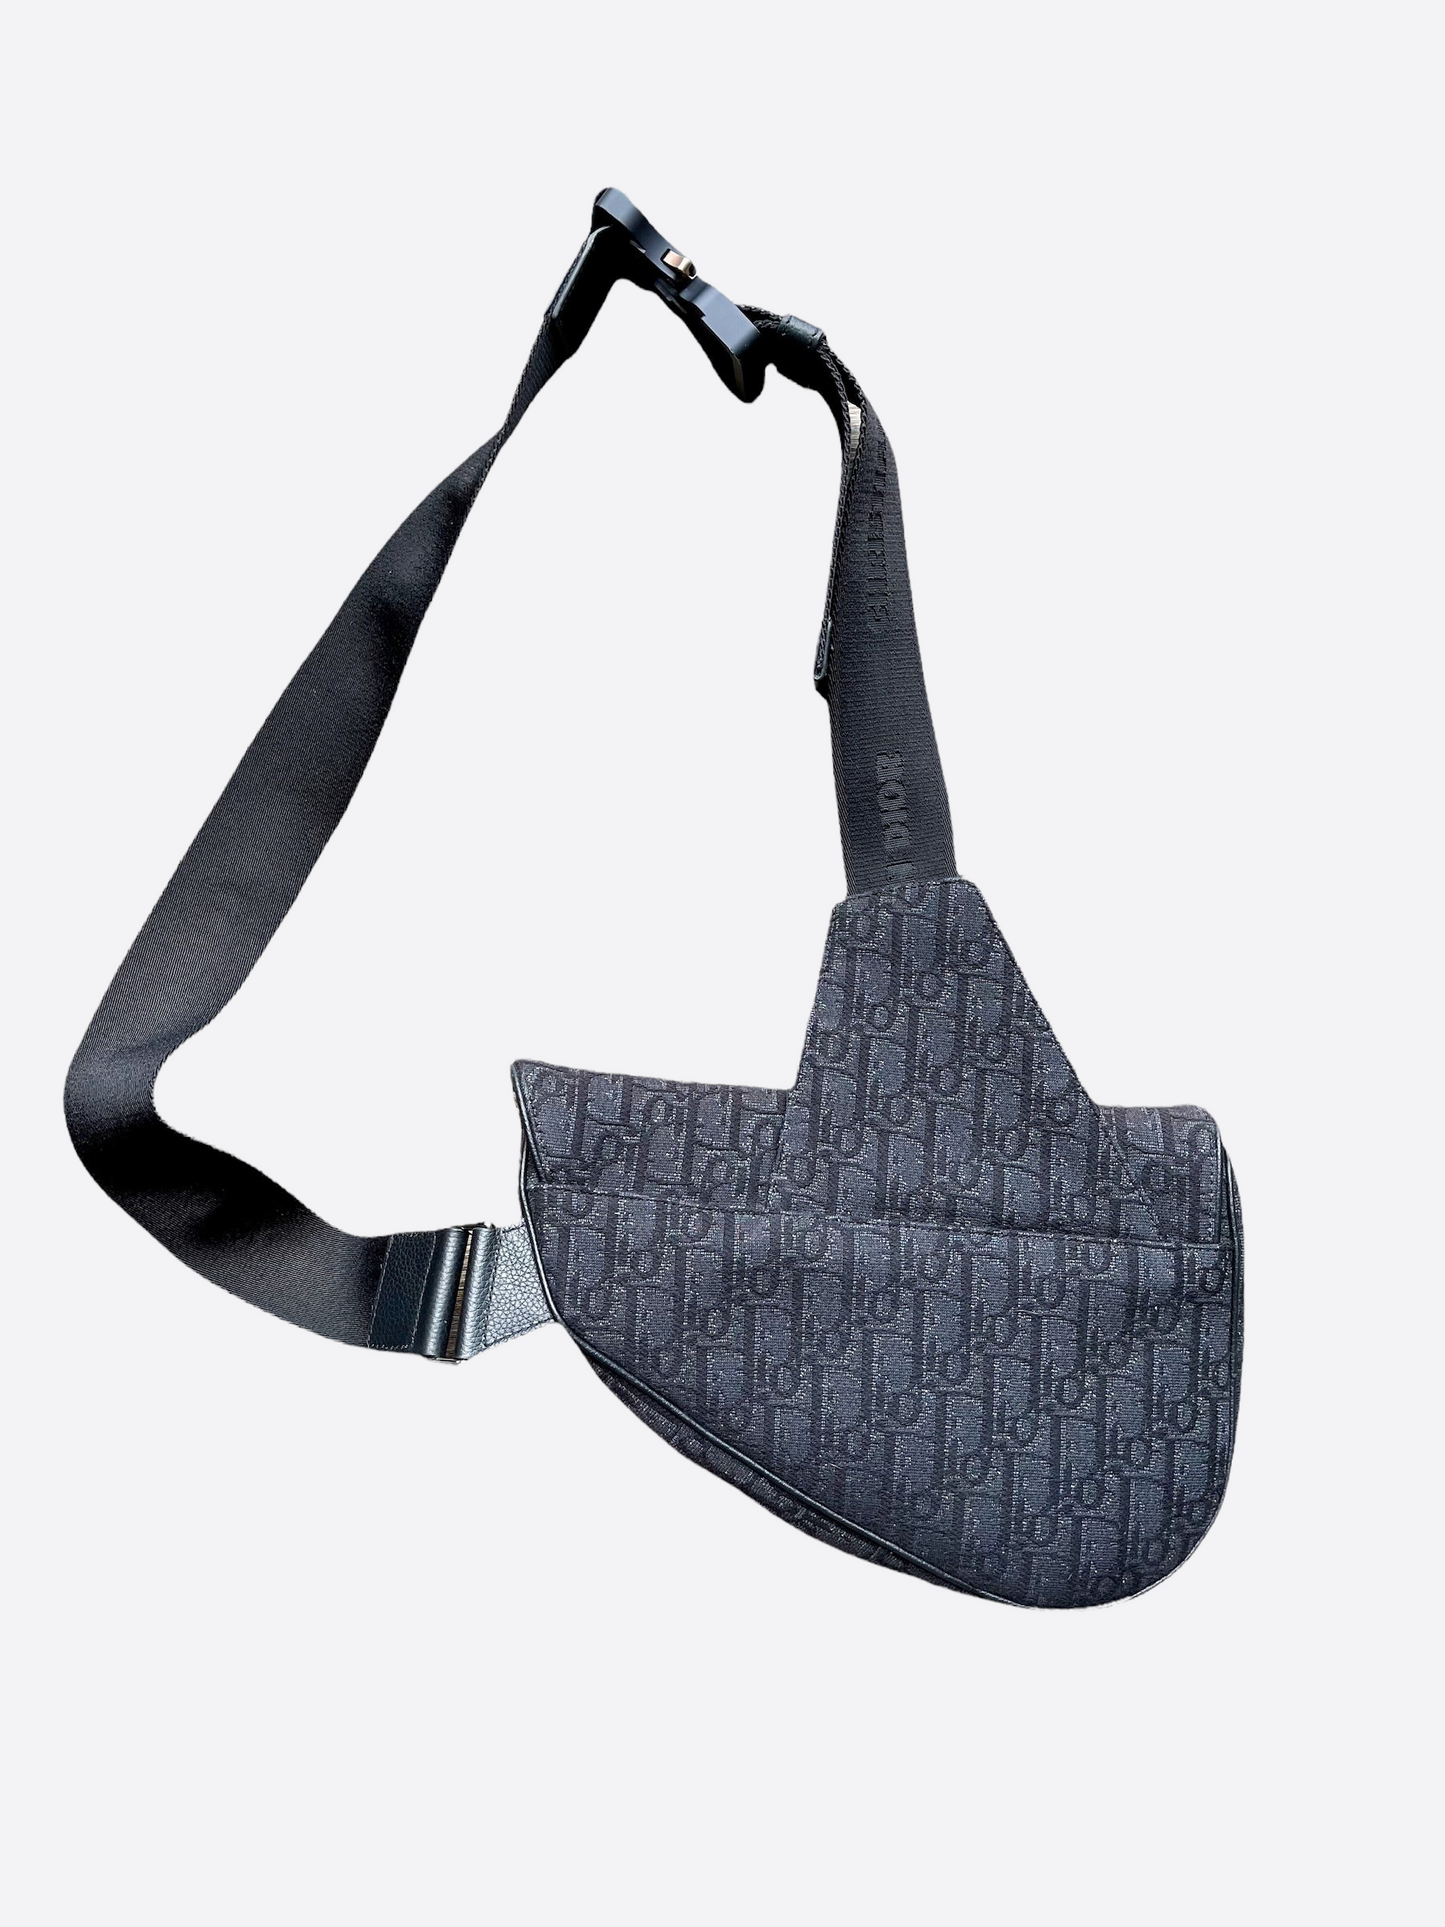 Dior Oblique Black Saddle Bag